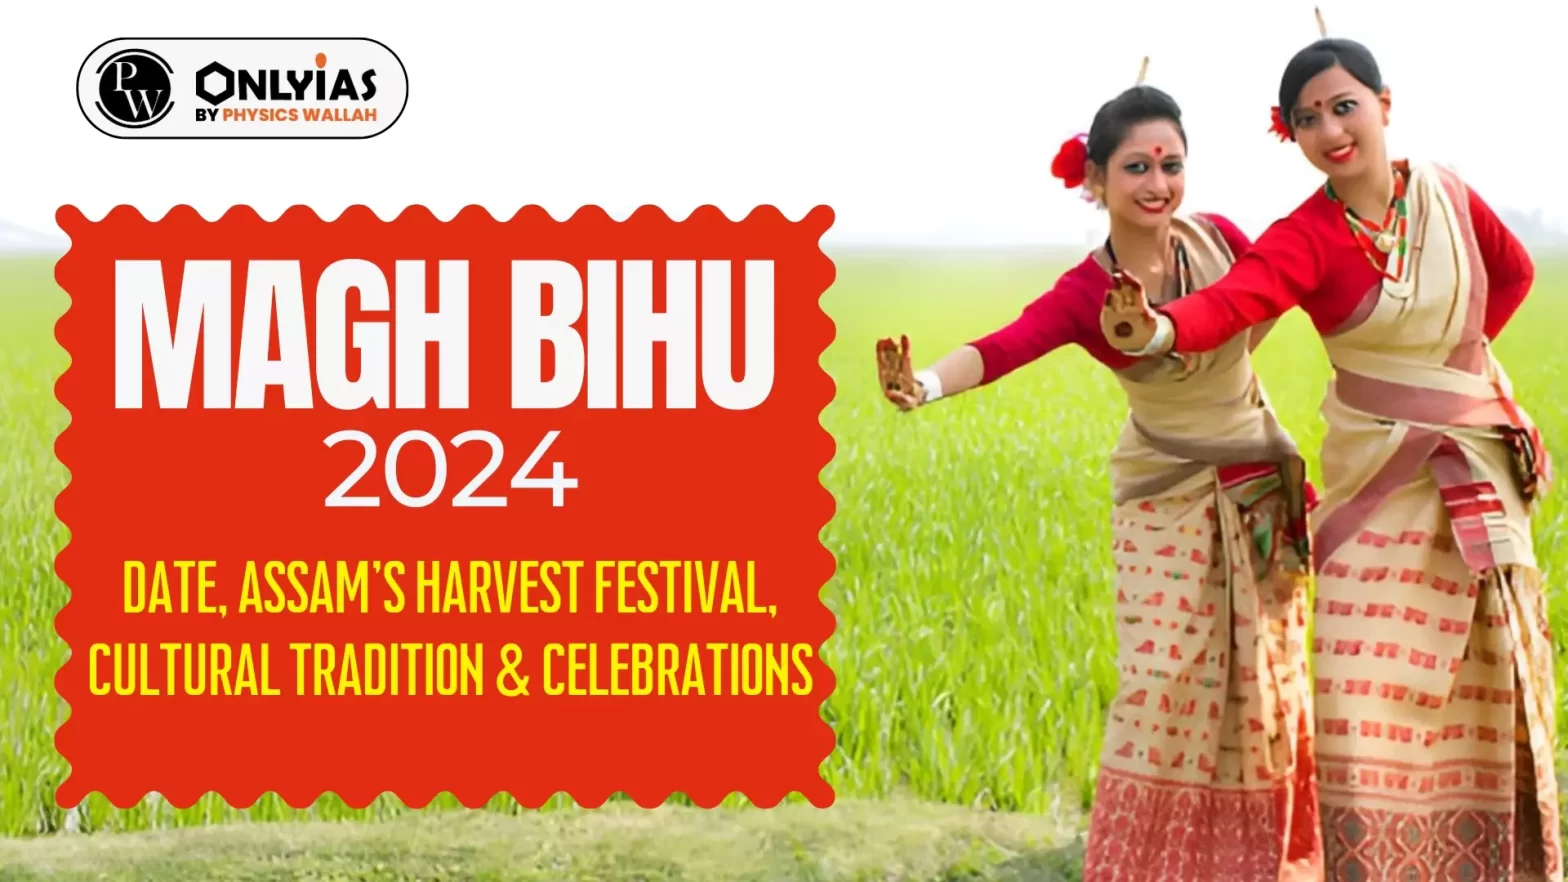 Magh Bihu 2024 Date, Assam's Harvest Festival, Cultural Tradition